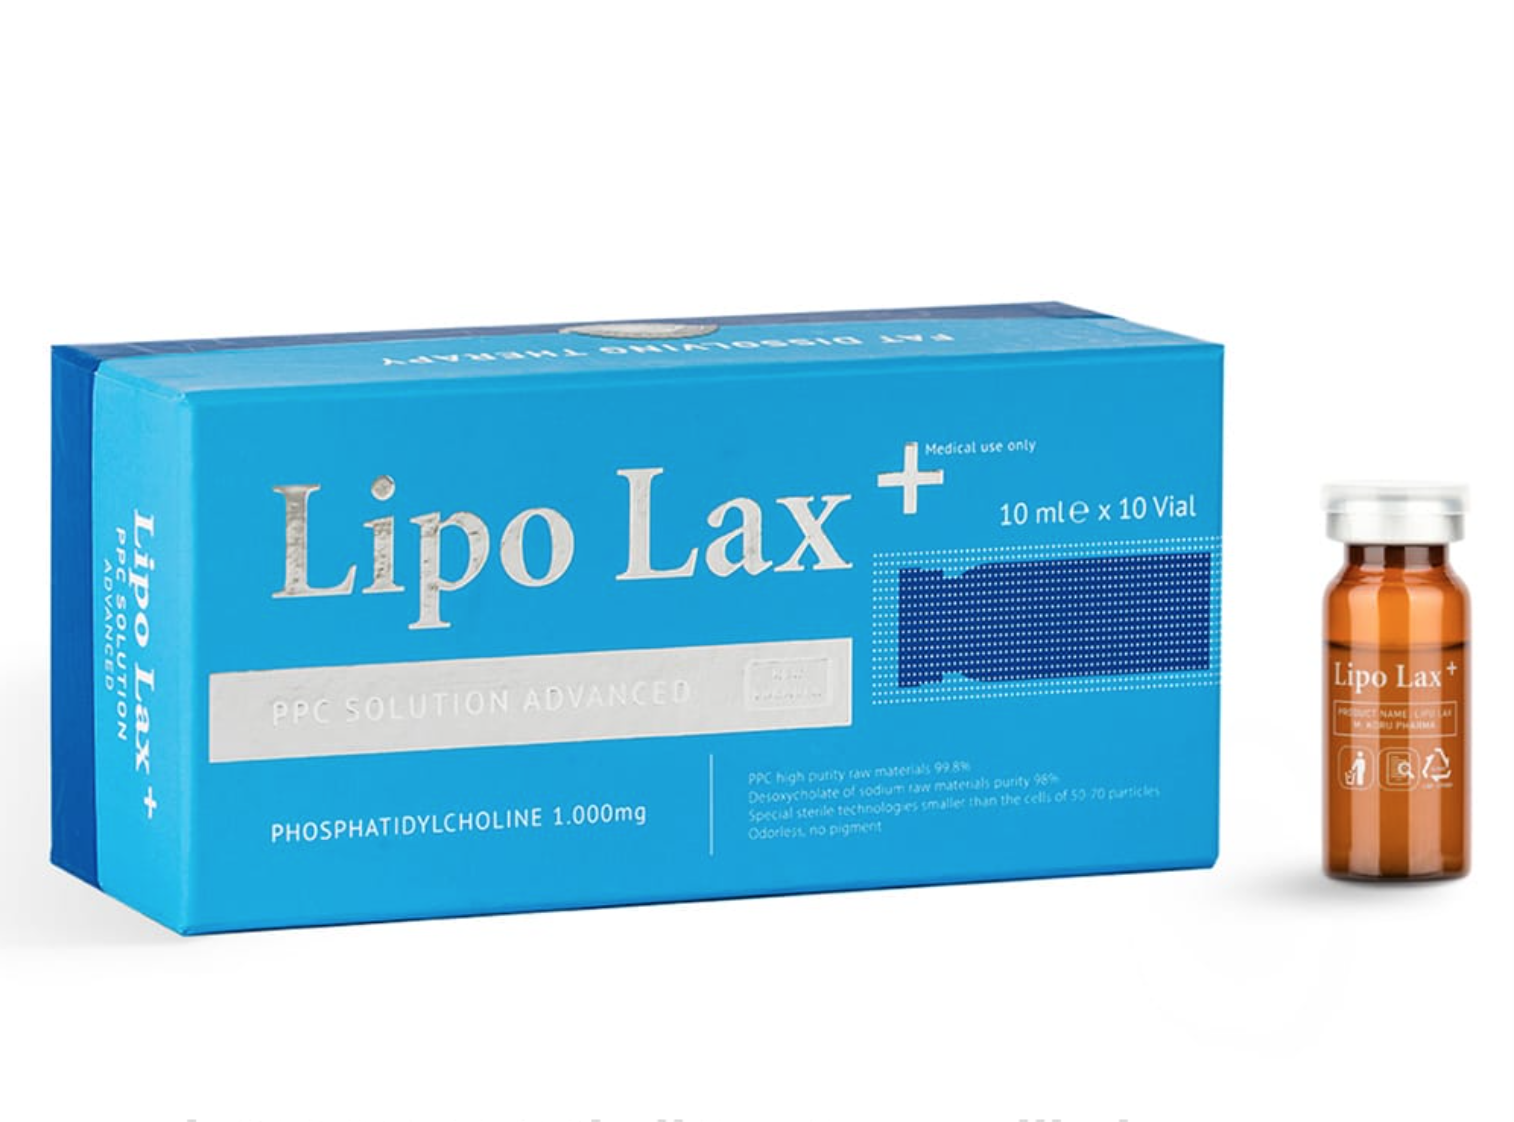 Биогель стройность липолитик для лица отзывы. Lipo Lab PPC solution флакон 10 мл. Lipo LAX липолитик. Dr Lipo липолитик для лица. Липолитик Lipo Lab для тела.